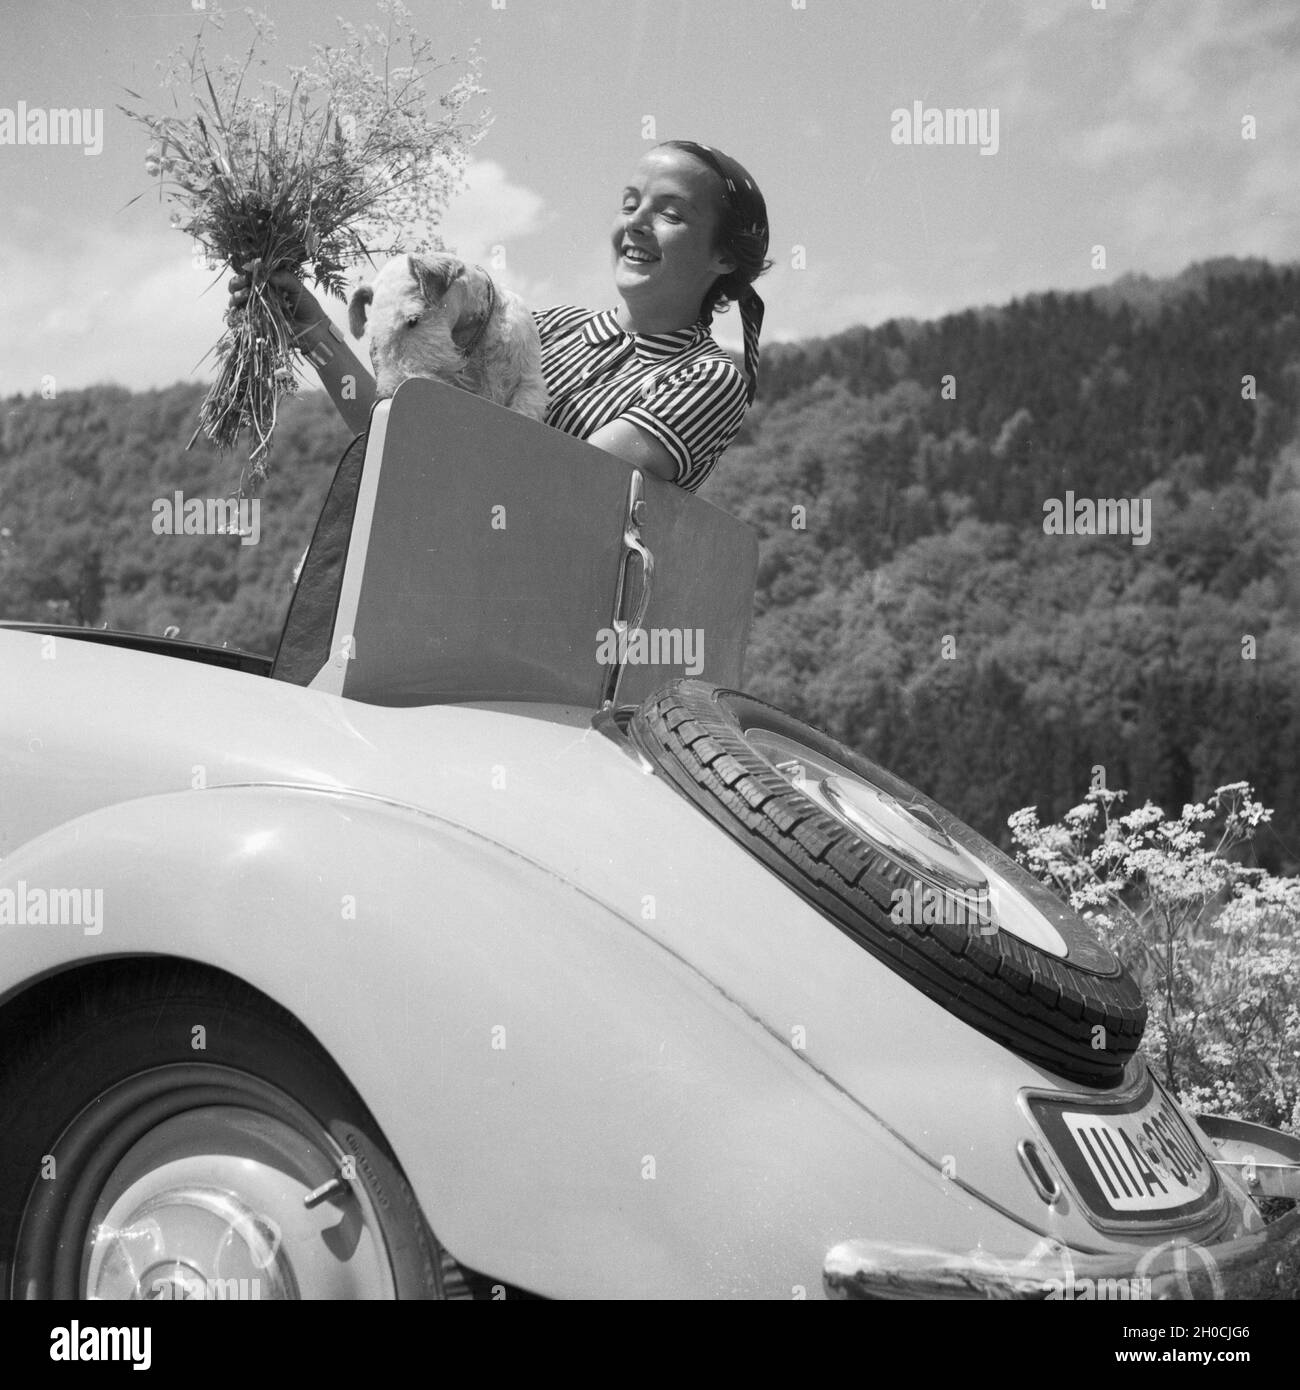 Eine Frau Mit einem Blumenstrauß am Kofferraum einem Mercedes Benz Cabrio, Deutschland 1930er Jahre. Una donna con un mazzo di fiori nella parte posteriore di una Mercedes Benz cabrio, Germania 1930s. Foto Stock